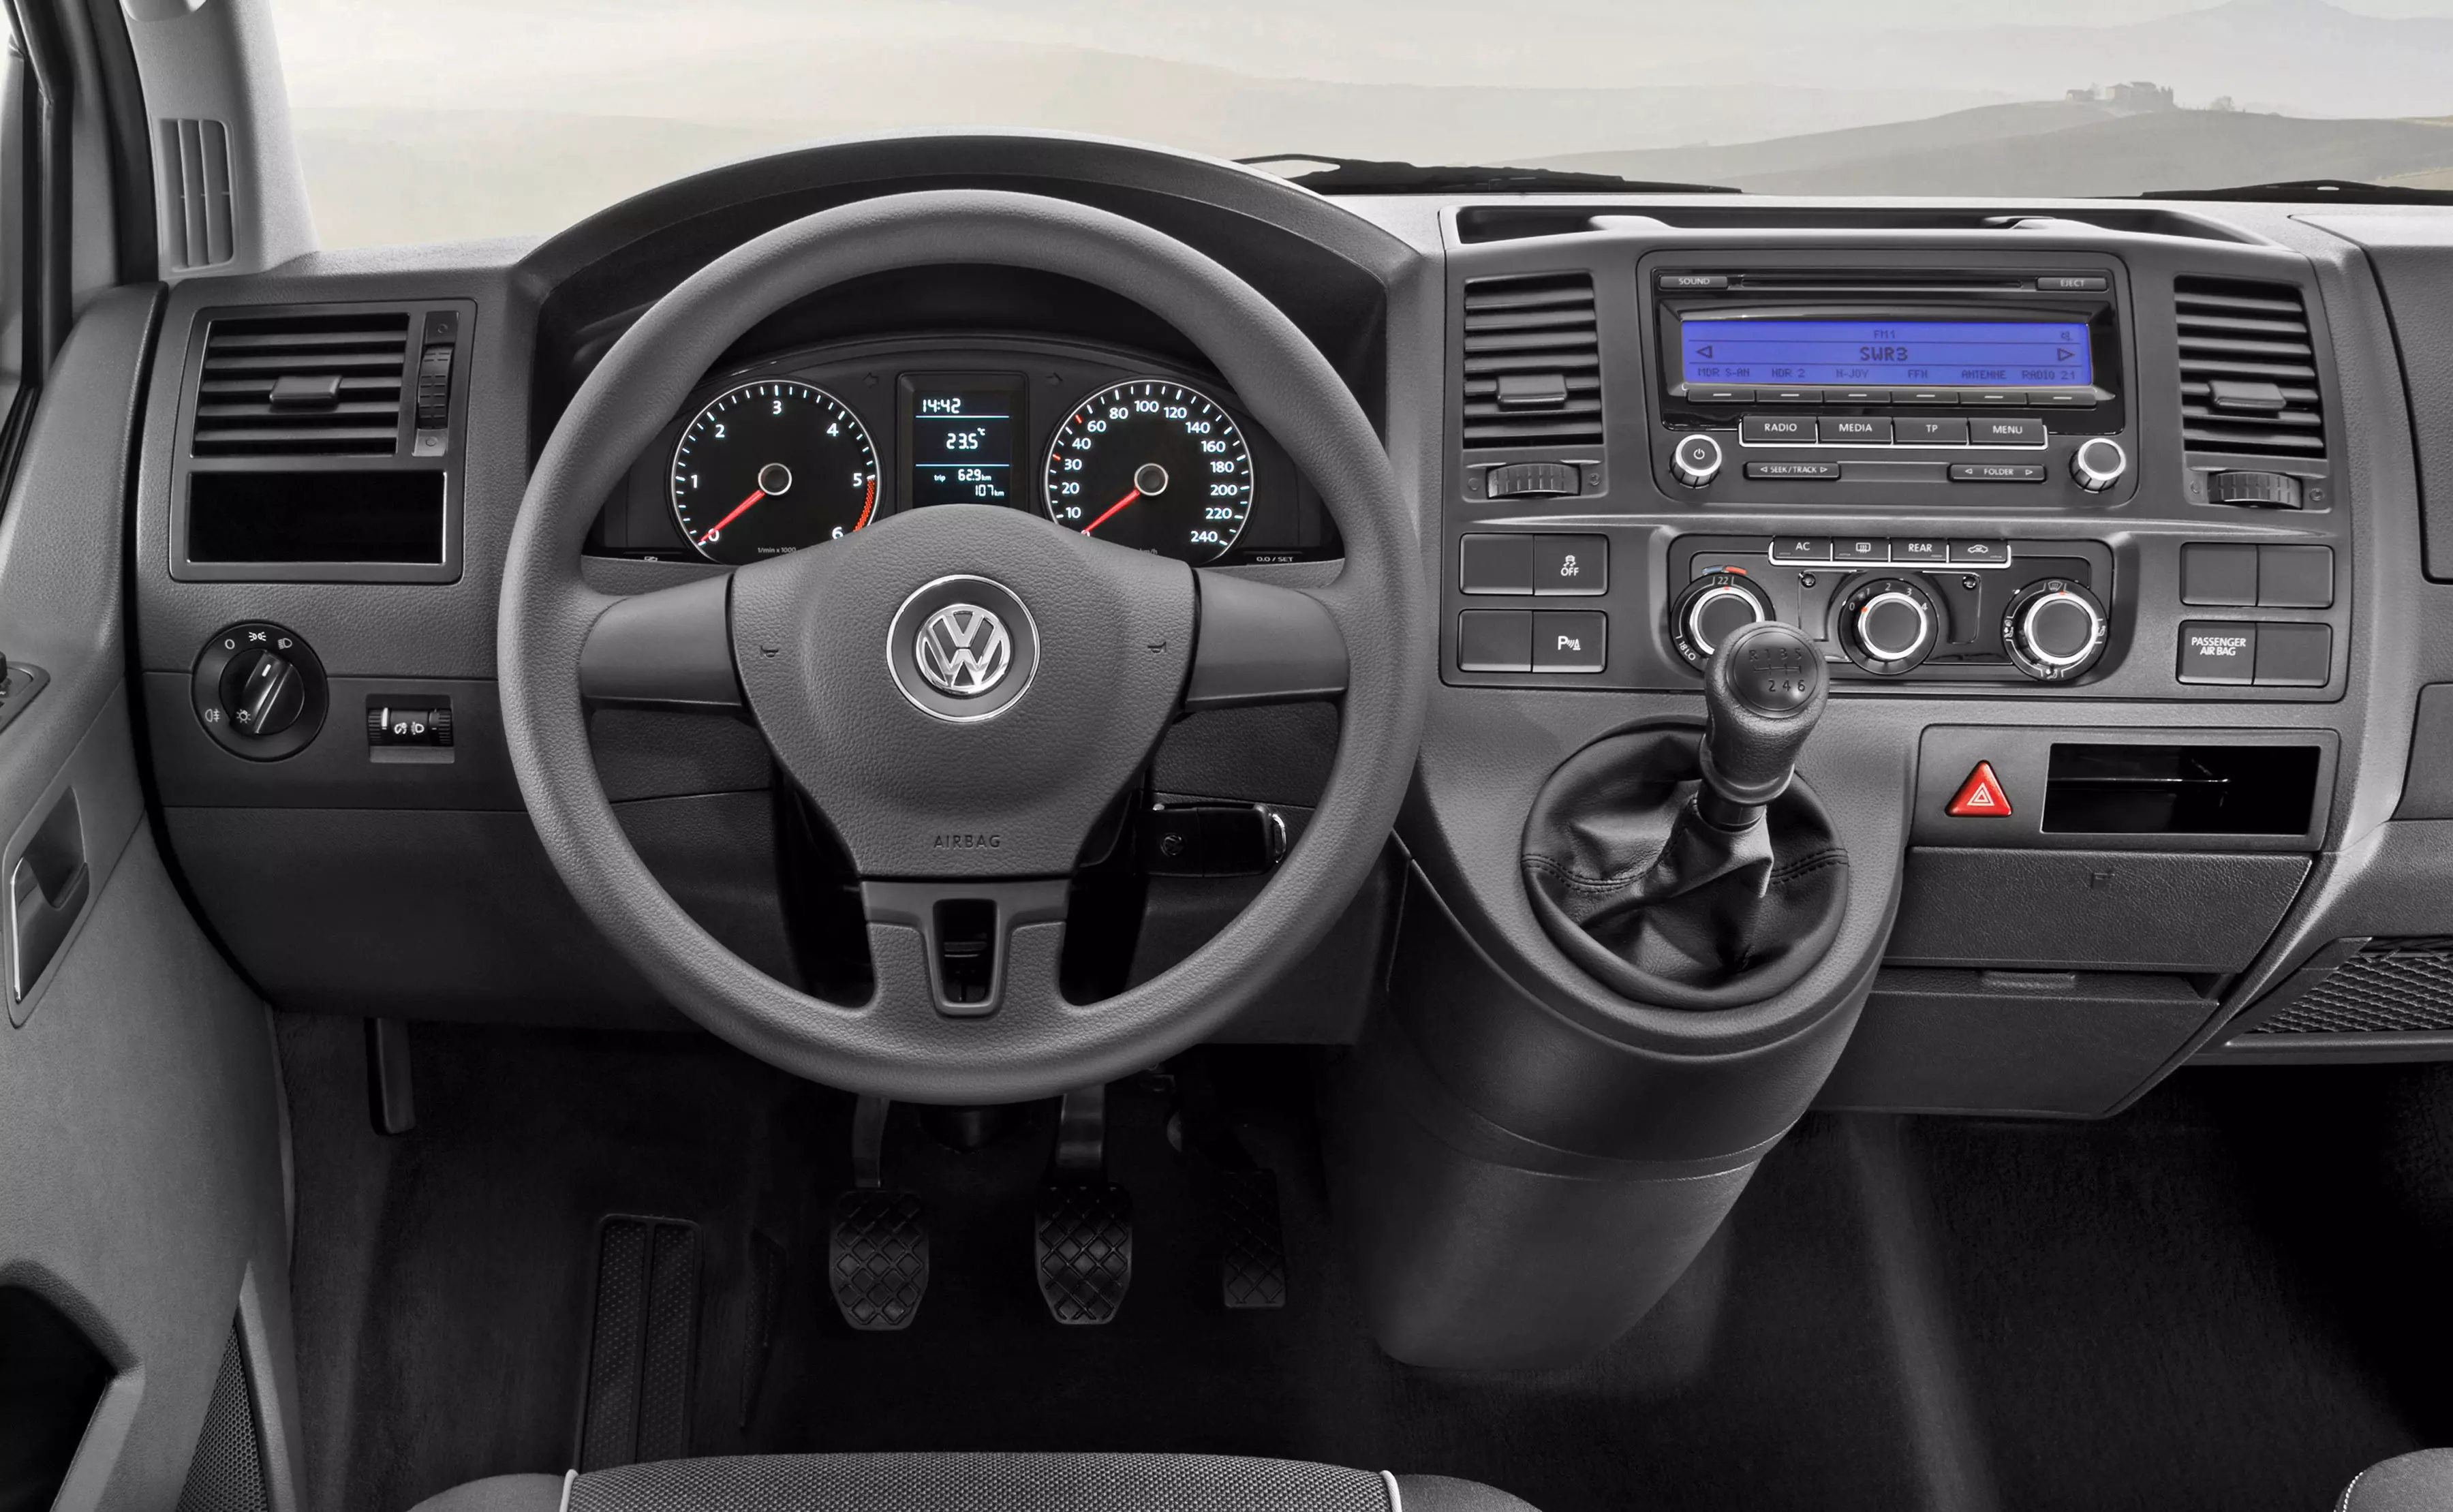 Volkswagen Multivan 2010 T5 (2010 - 2015) reviews, technical data